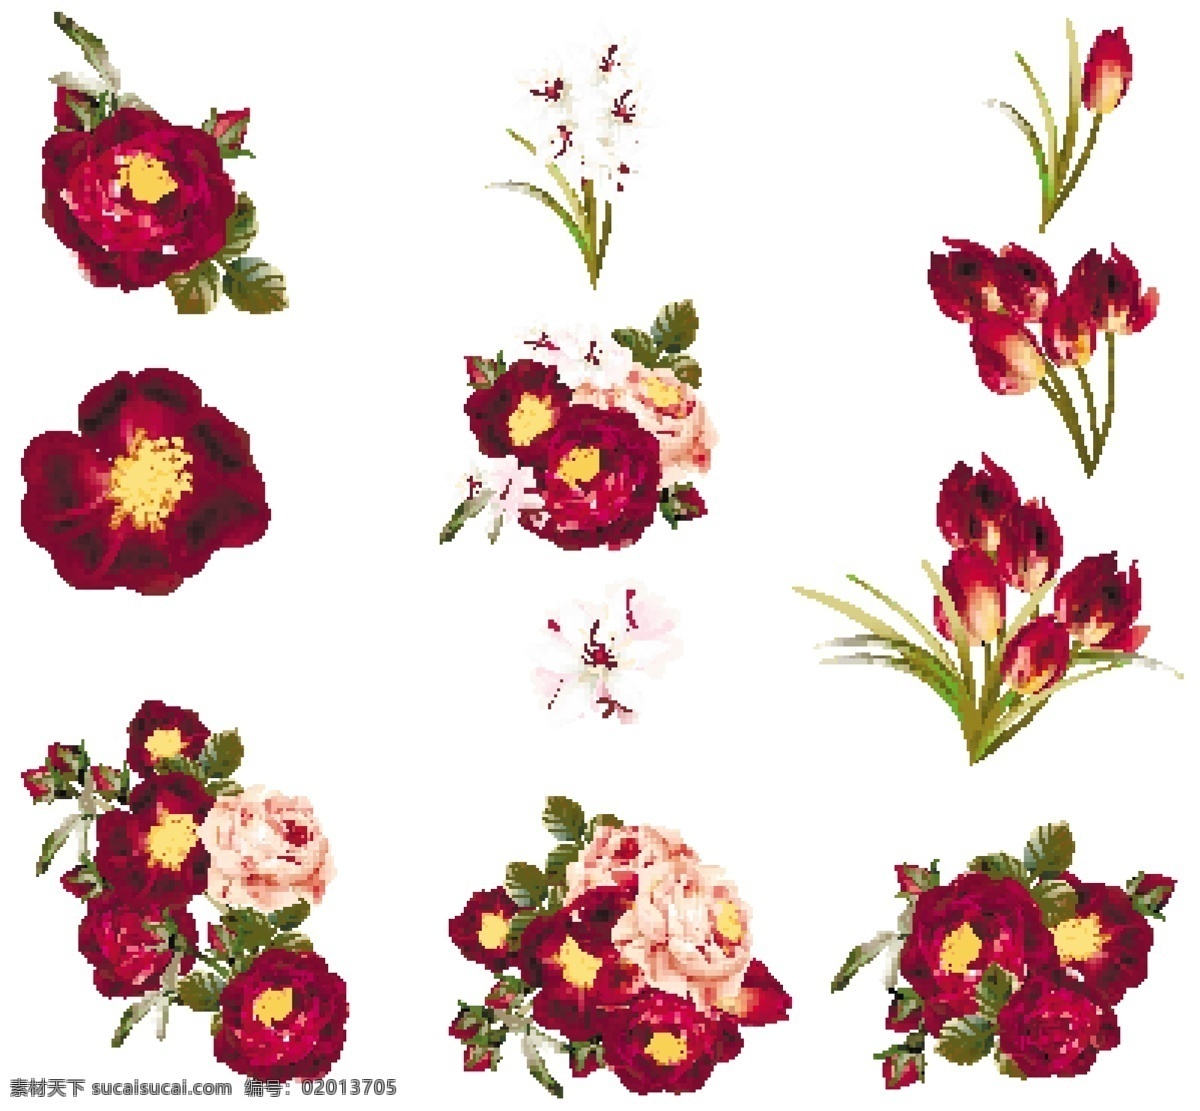 红色 花蕊 卡通 矢量 花朵 平面素材 设计素材 矢量素材